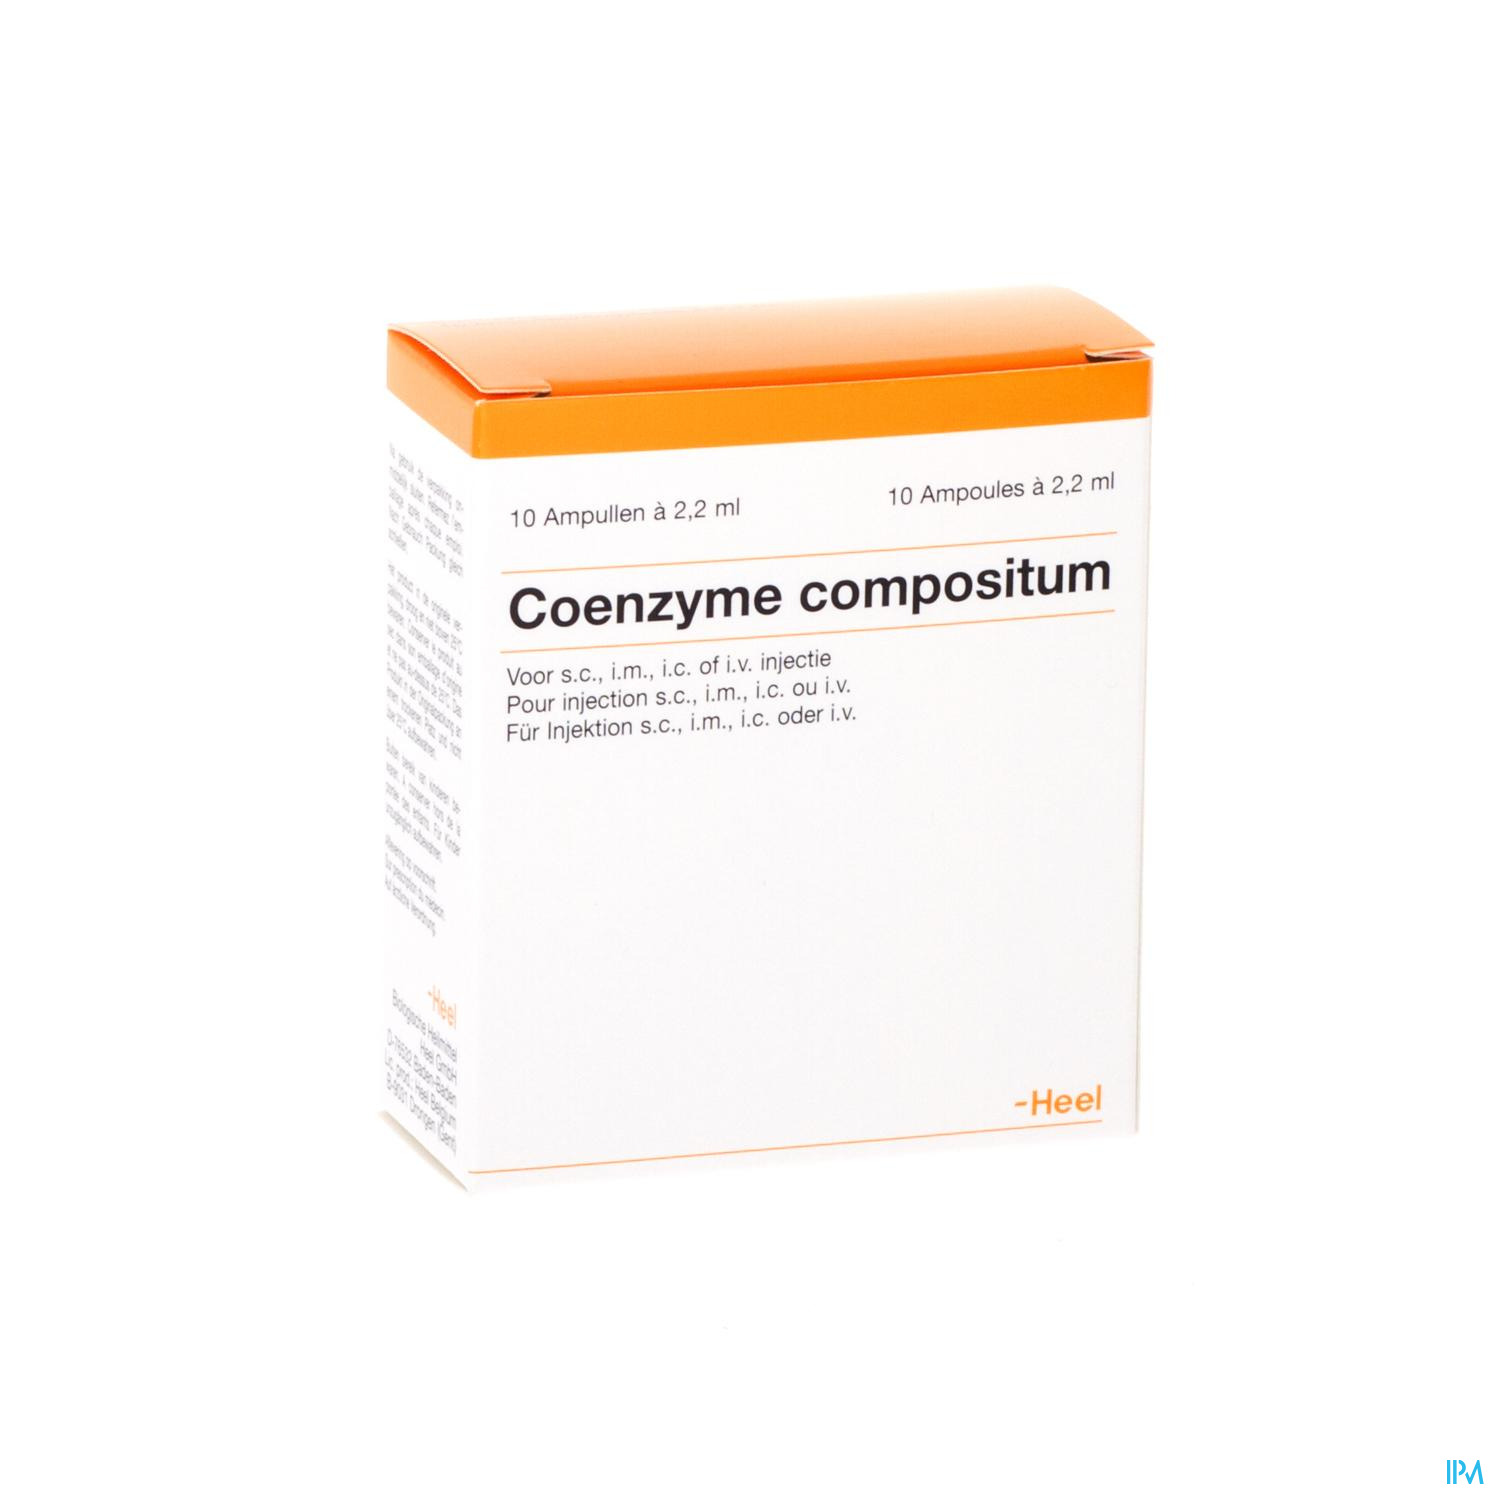 Coenzyme Compositum I Amp 10x2,2ml Heel